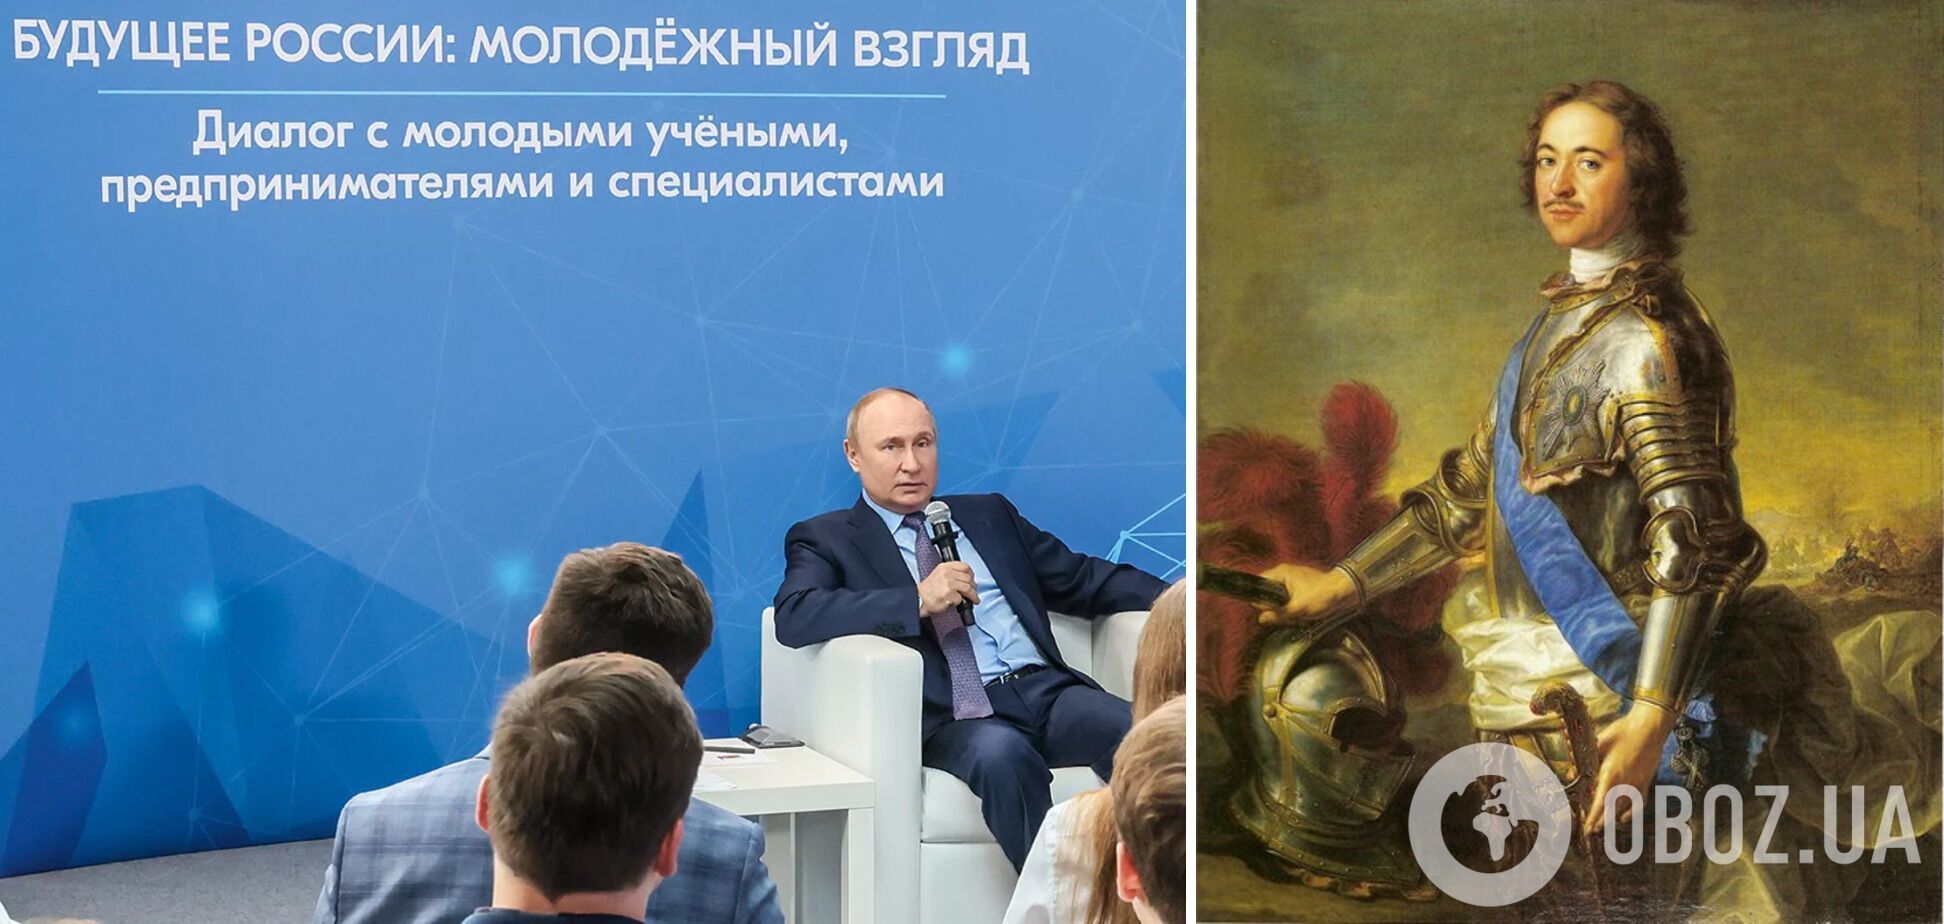 Путин сравнил себя с Петром I и признался, что его цель в Украине – восстановление РФ как имперского государства